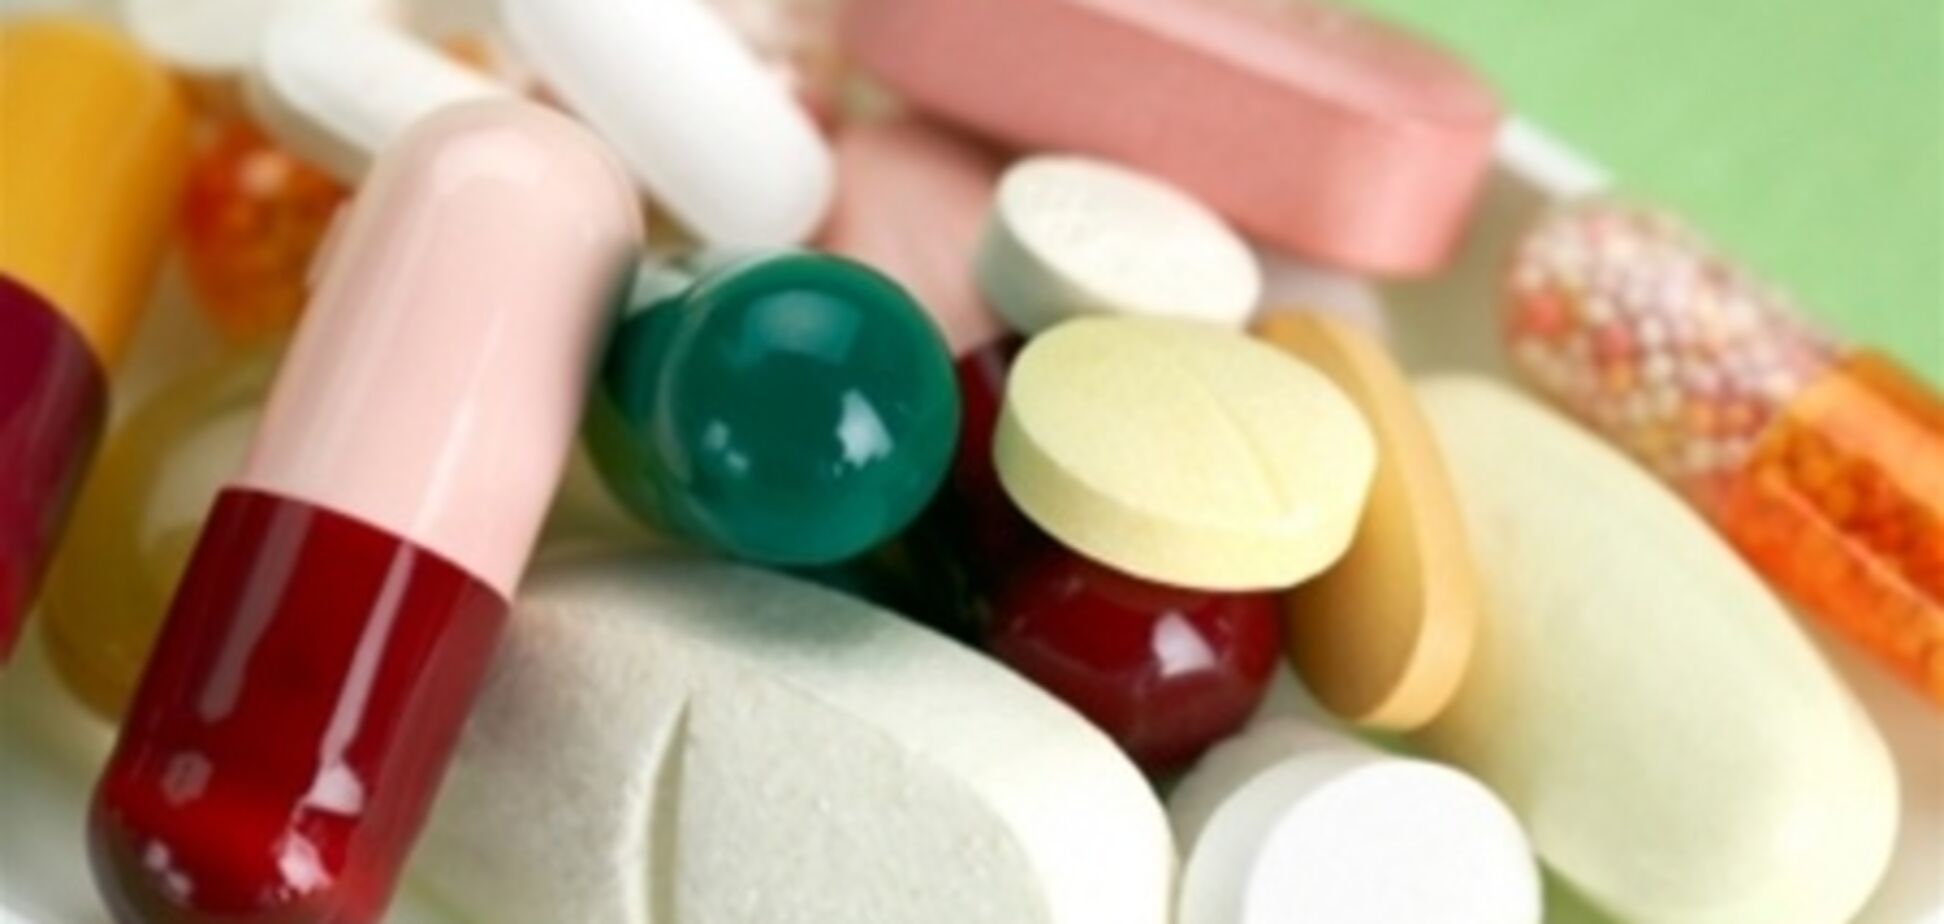 Что сулит фармацевтам новый закон о лекарствах